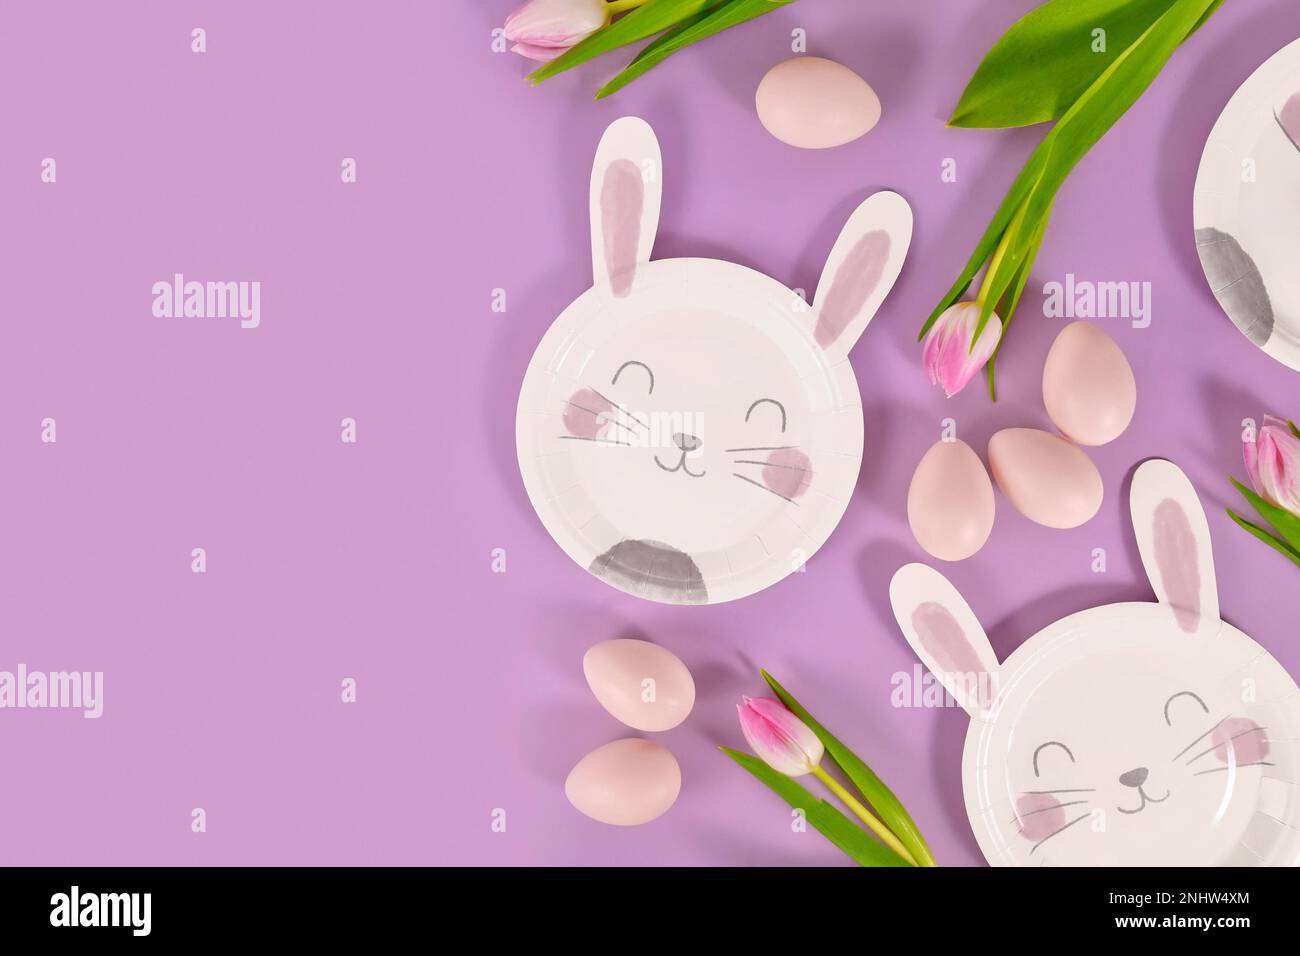 Plat de fête de Pâques avec des assiettes en papier en forme de lapin, des œufs et des fleurs de tulipe sur fond violet avec espace de copie Banque D'Images